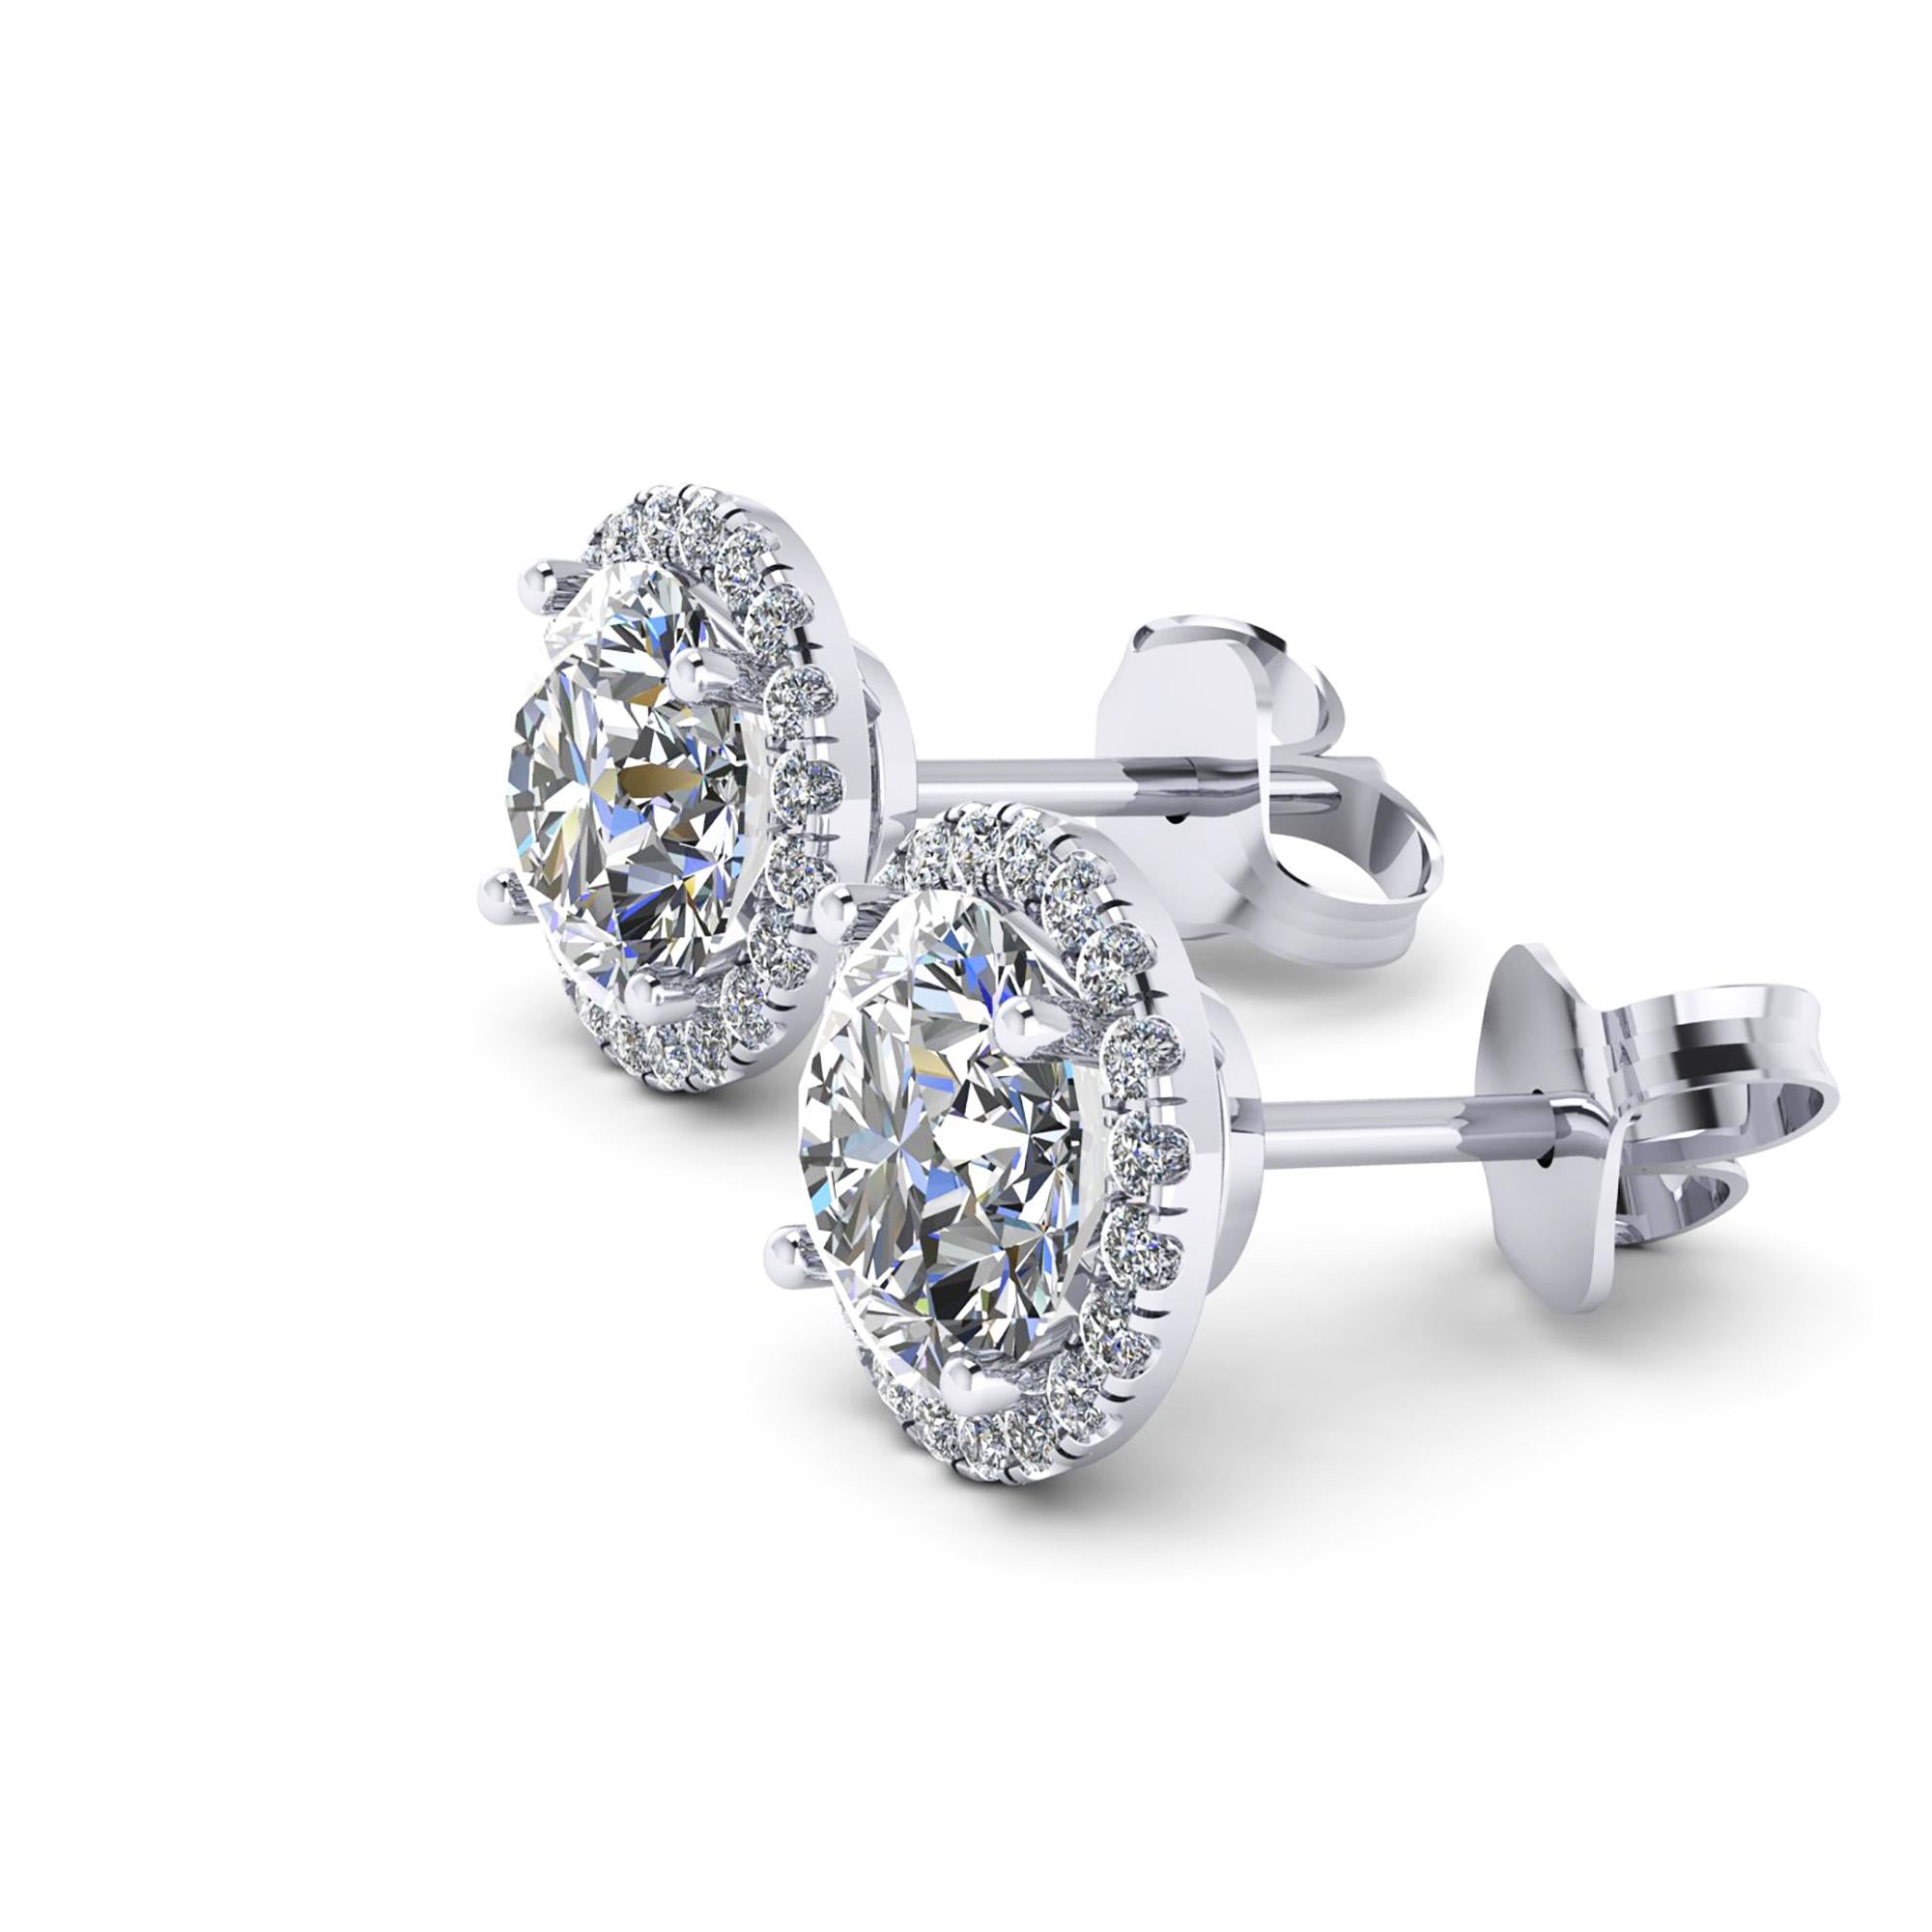 Boucles d'oreilles composées de diamants certifiés GIA de 2,27 carats, faites à la main en platine, avec un fermoir à vis,
deux diamants ronds brillants, couleur D, pureté VS2 de 1,01 carat et 1,00 carat, certificat GIA accompagneront les boucles